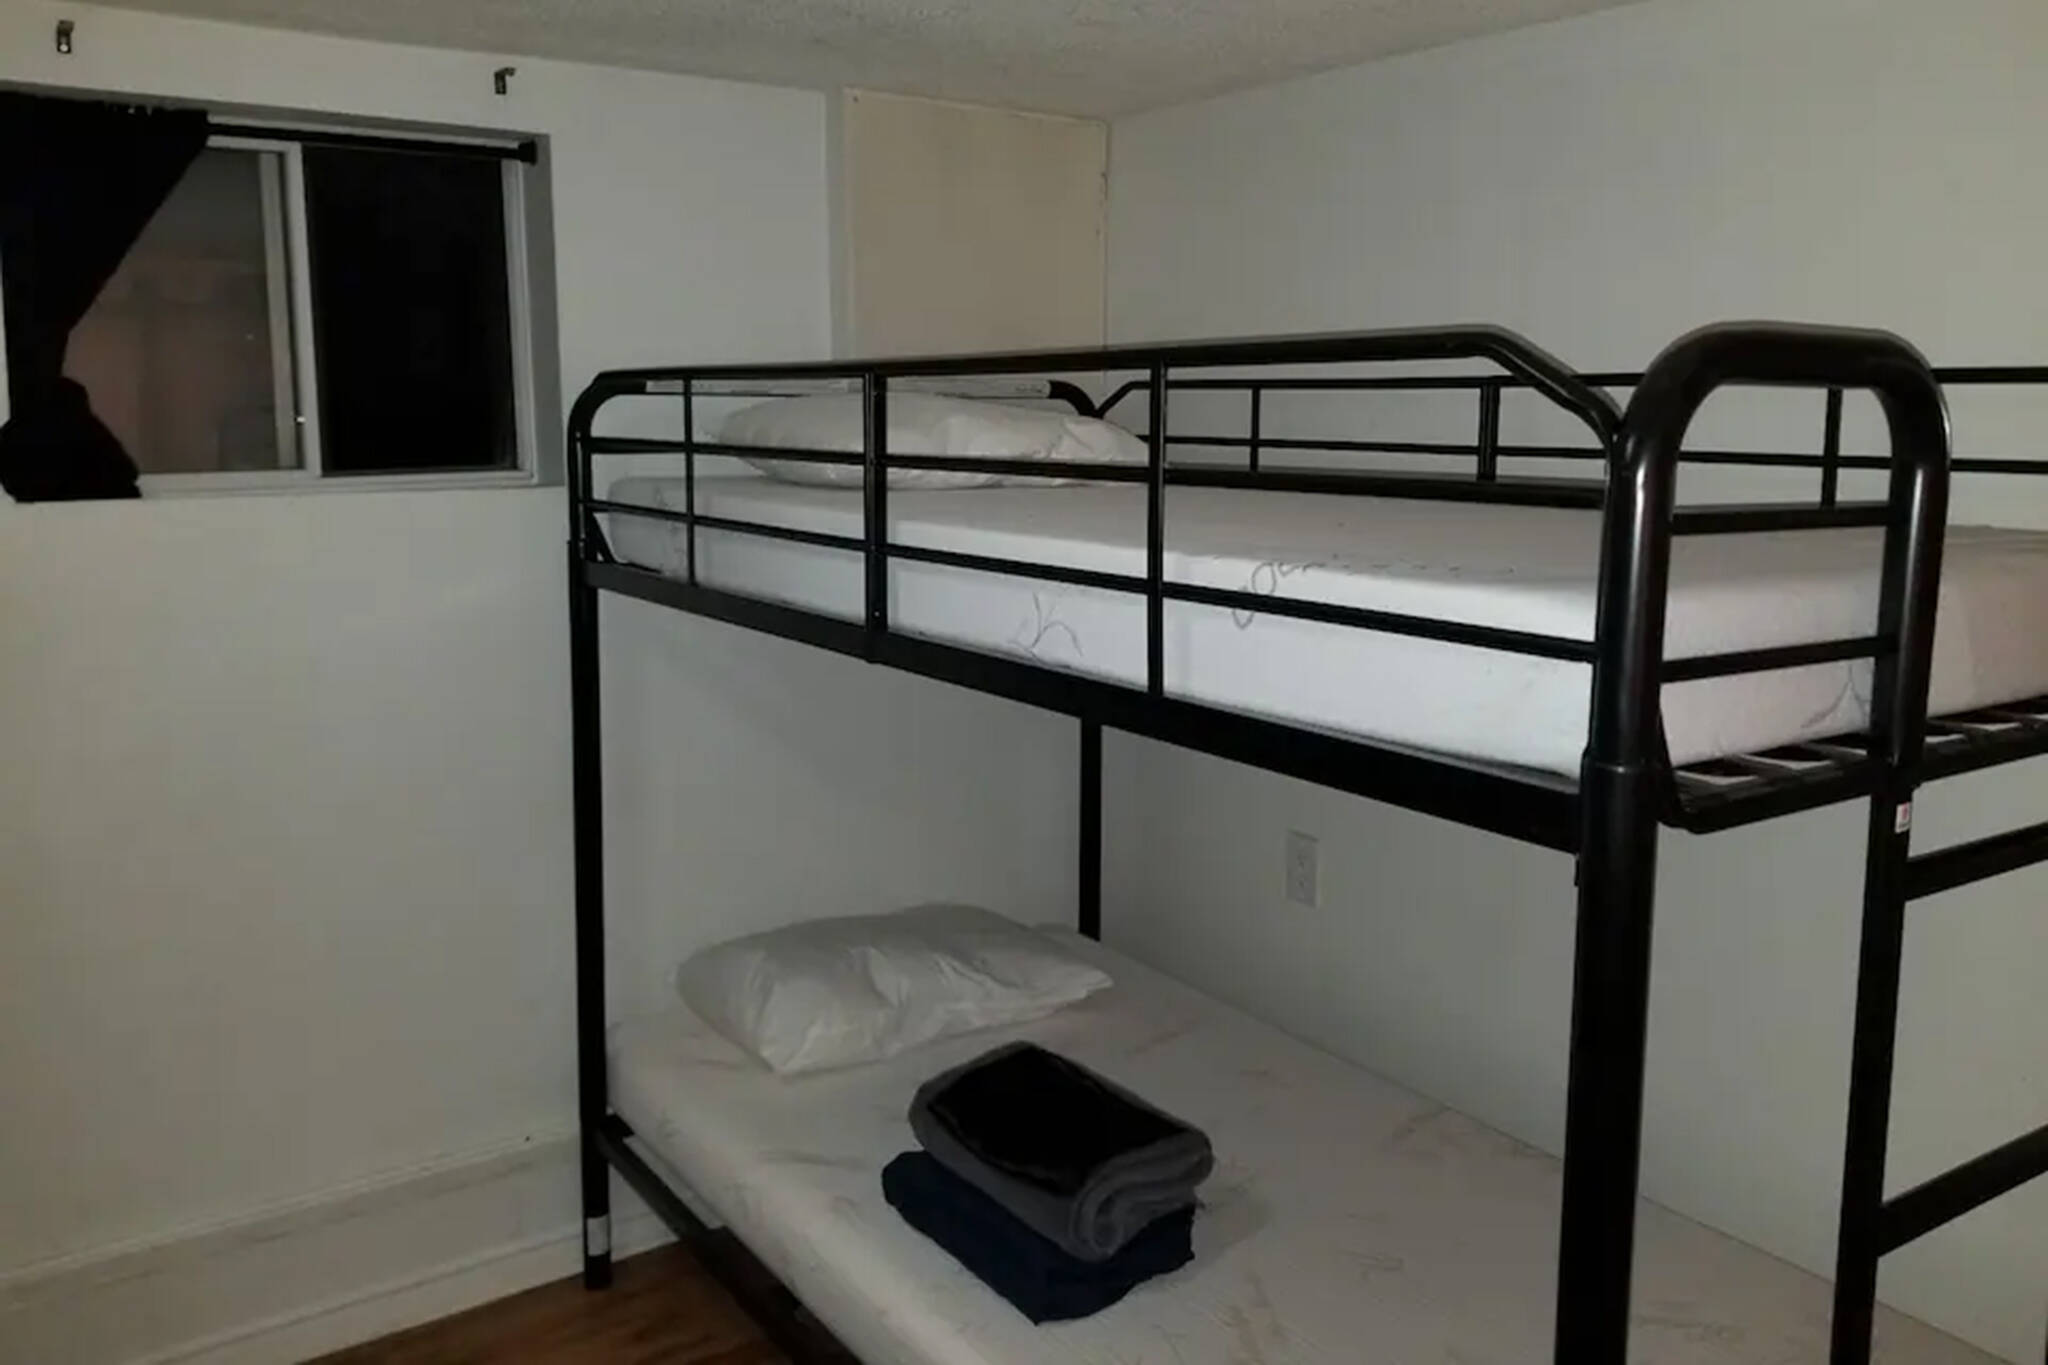 多伦多的 Airbnb 有 10 个地下室双层床，每个月售价超过 600 美元 ...